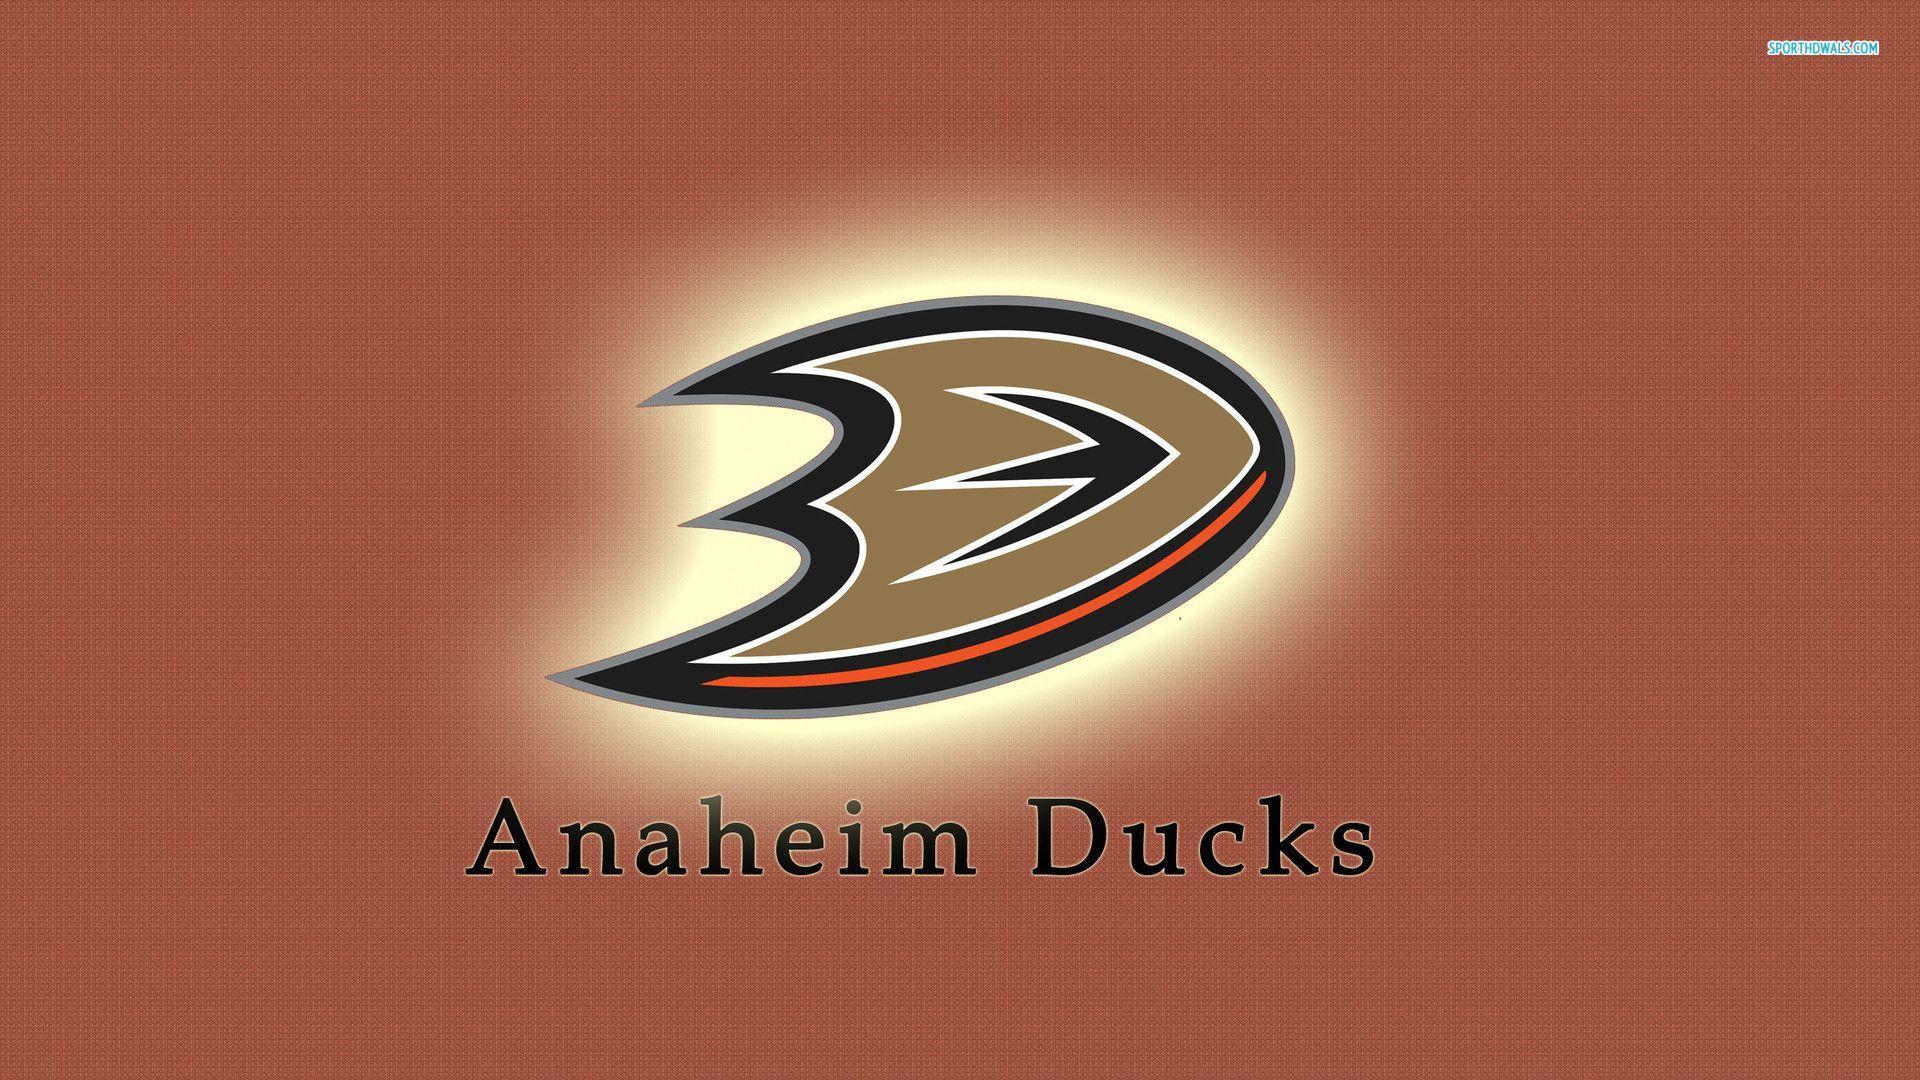 Anaheim Ducks desktop wallpaper. Anaheim Ducks wallpaper